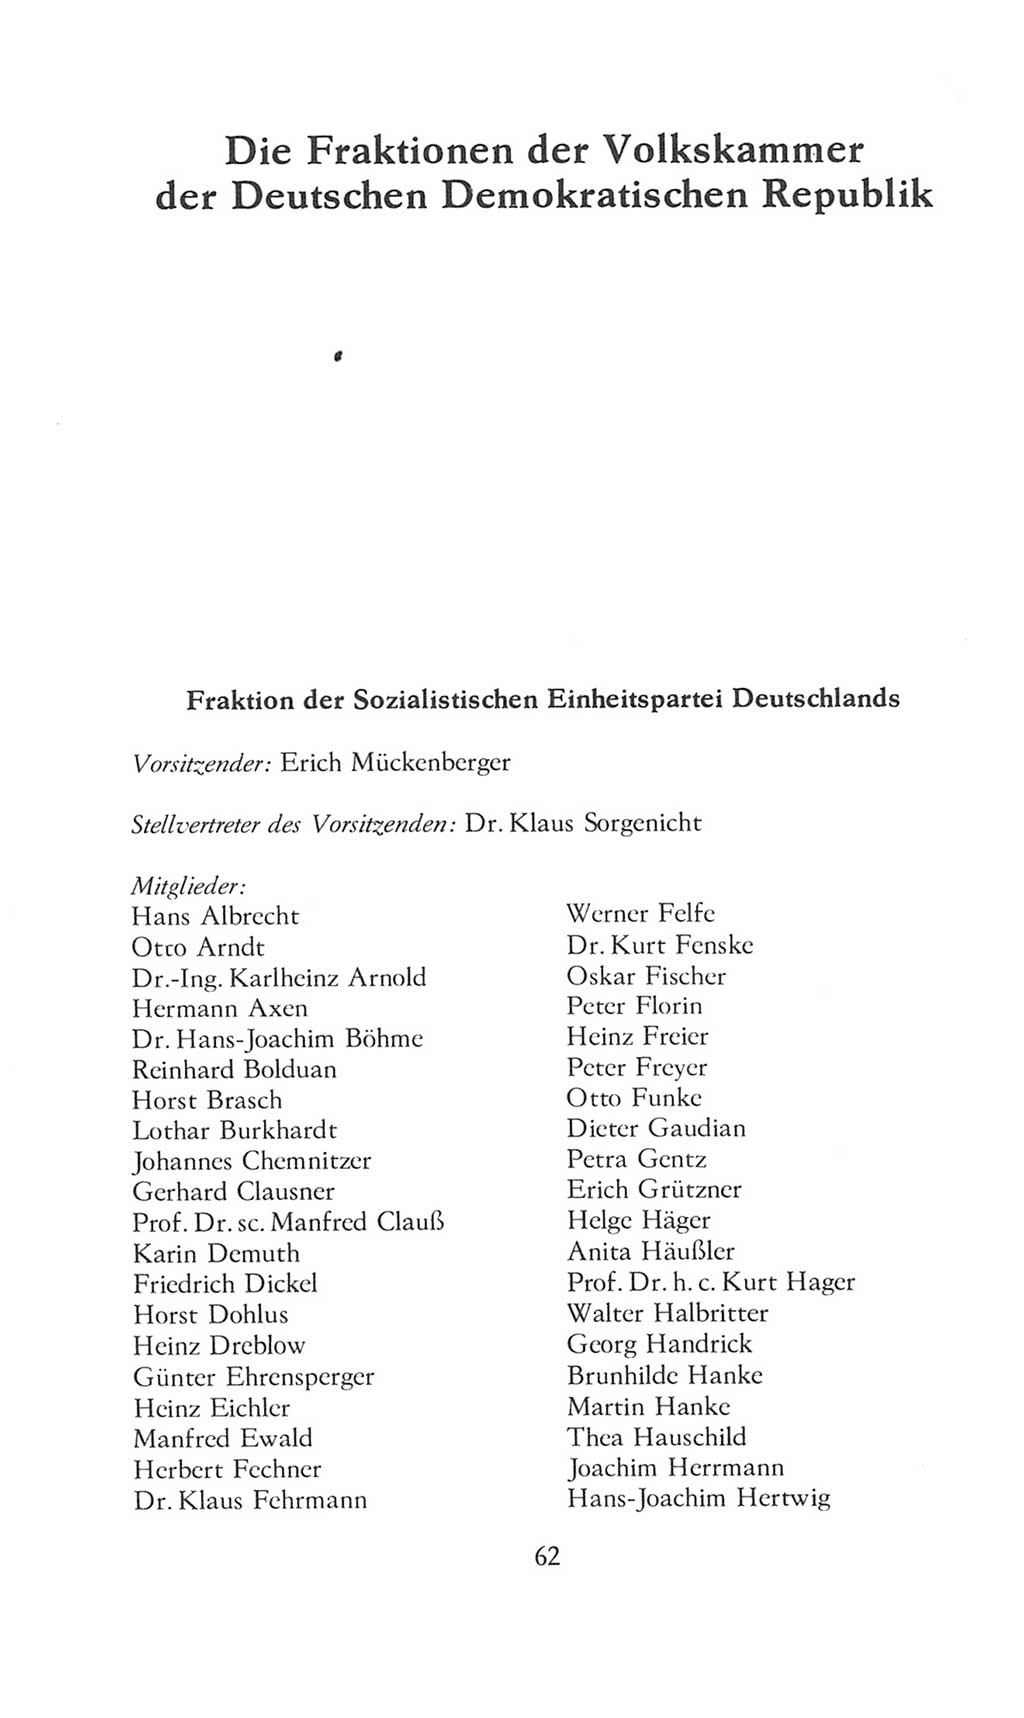 Volkskammer (VK) der Deutschen Demokratischen Republik (DDR), 8. Wahlperiode 1981-1986, Seite 62 (VK. DDR 8. WP. 1981-1986, S. 62)